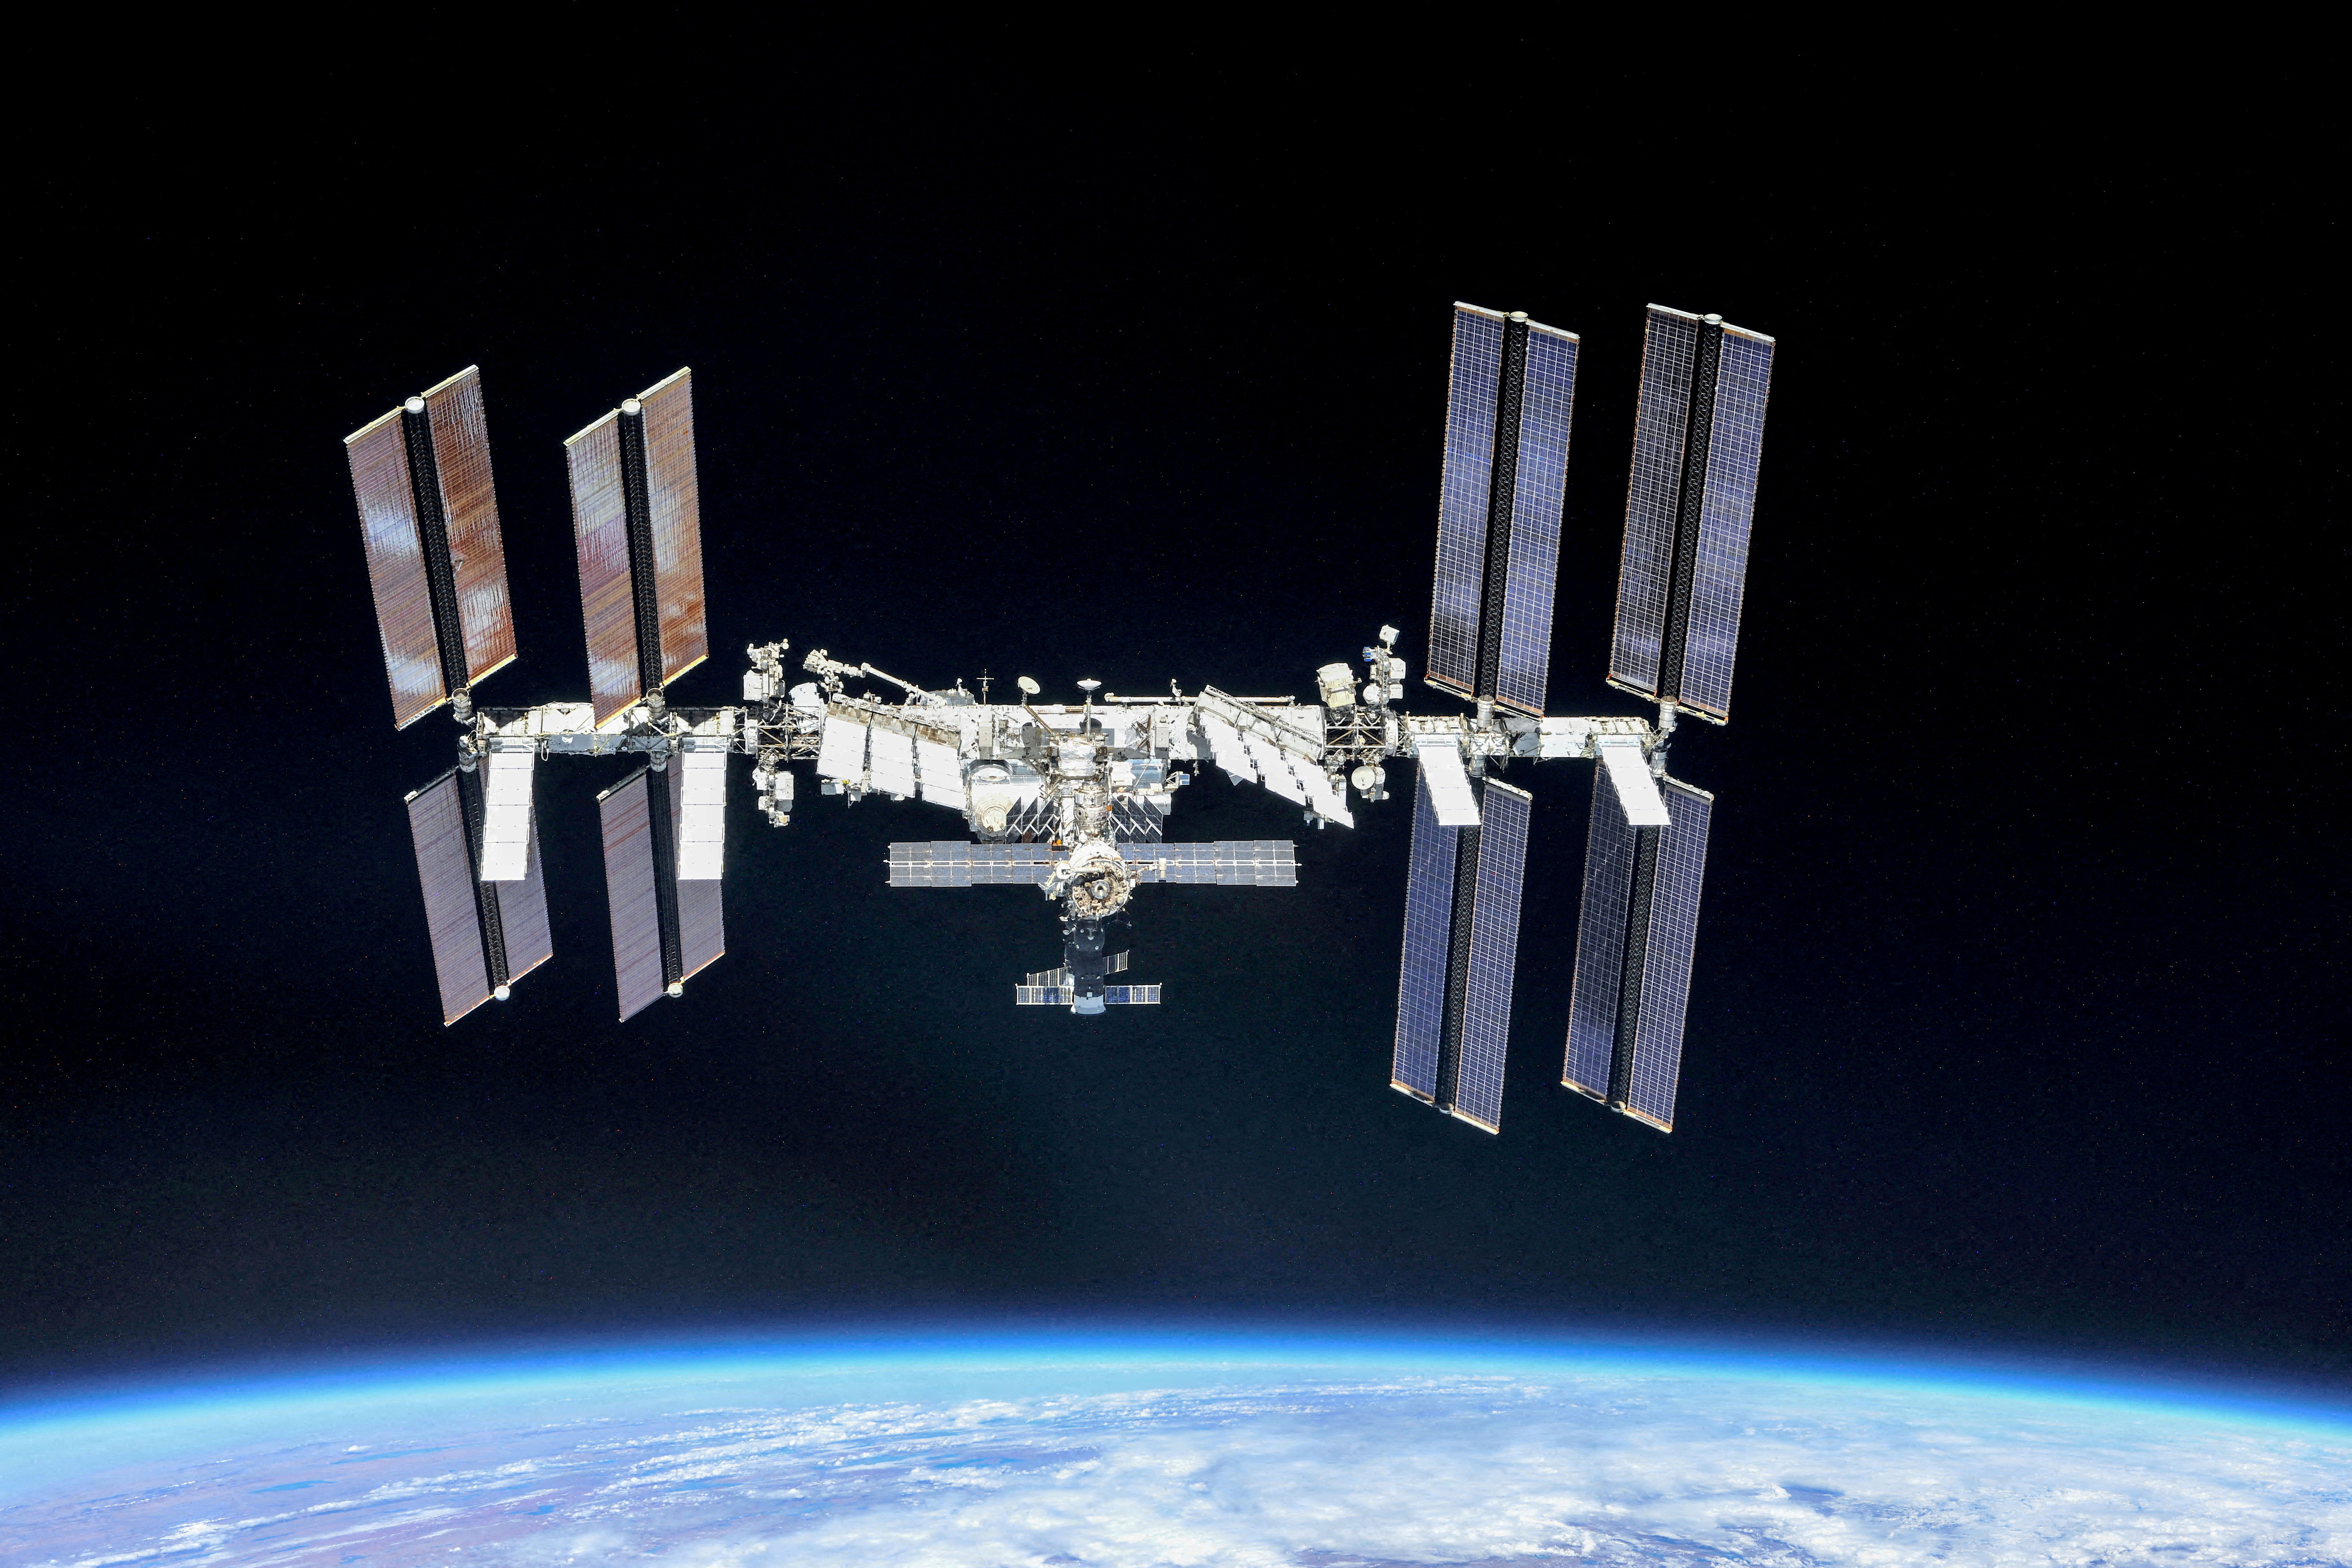 ไฟล์ภาพ: สถานีอวกาศนานาชาติ (ISS) ถ่ายโดยลูกเรือ Expedition 56 จากยานอวกาศ Soyuz หลังจากการล่มสลายเมื่อวันที่ 4 ตุลาคม 2018 (NASA/Roscosmos/REUTERS)